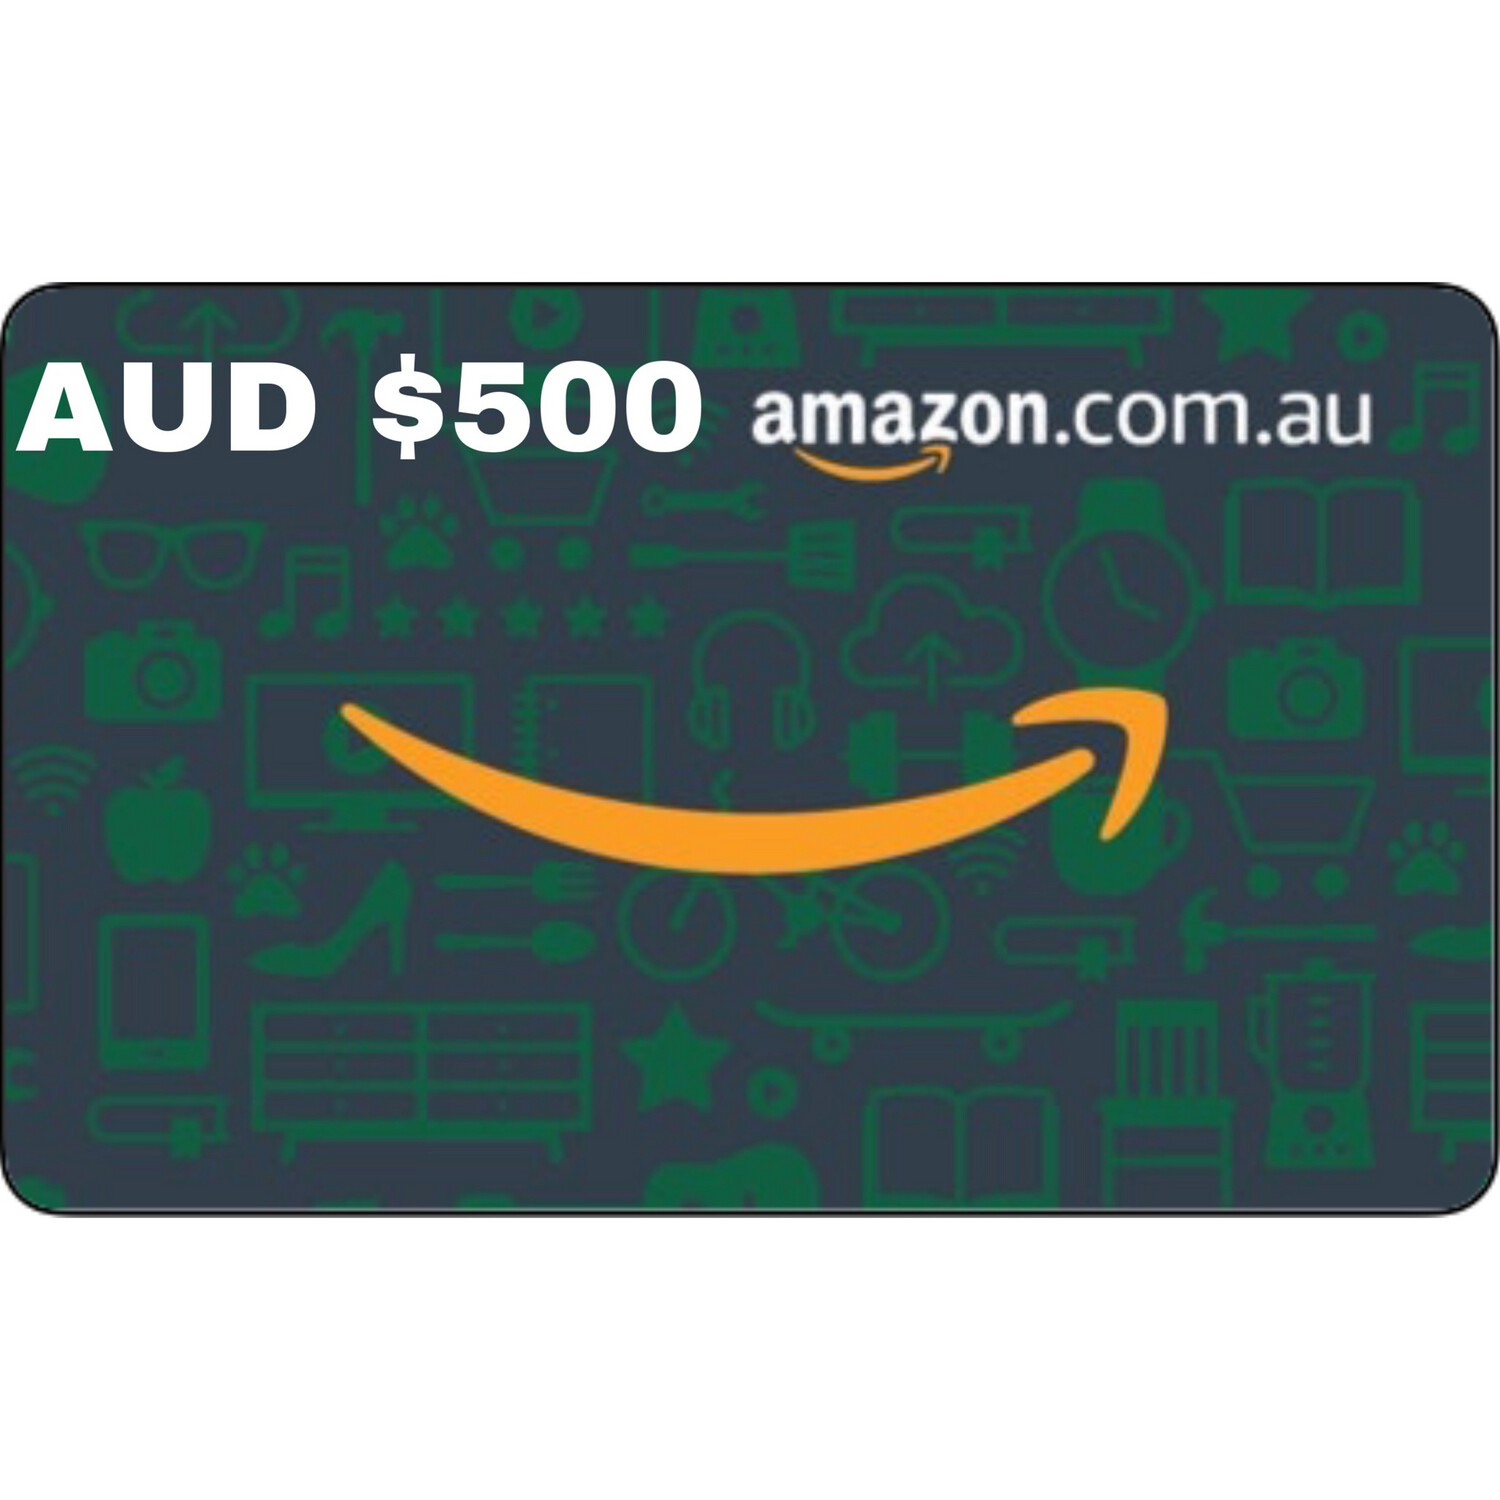 Amazon.com.au Gift Card Australia AUD $500